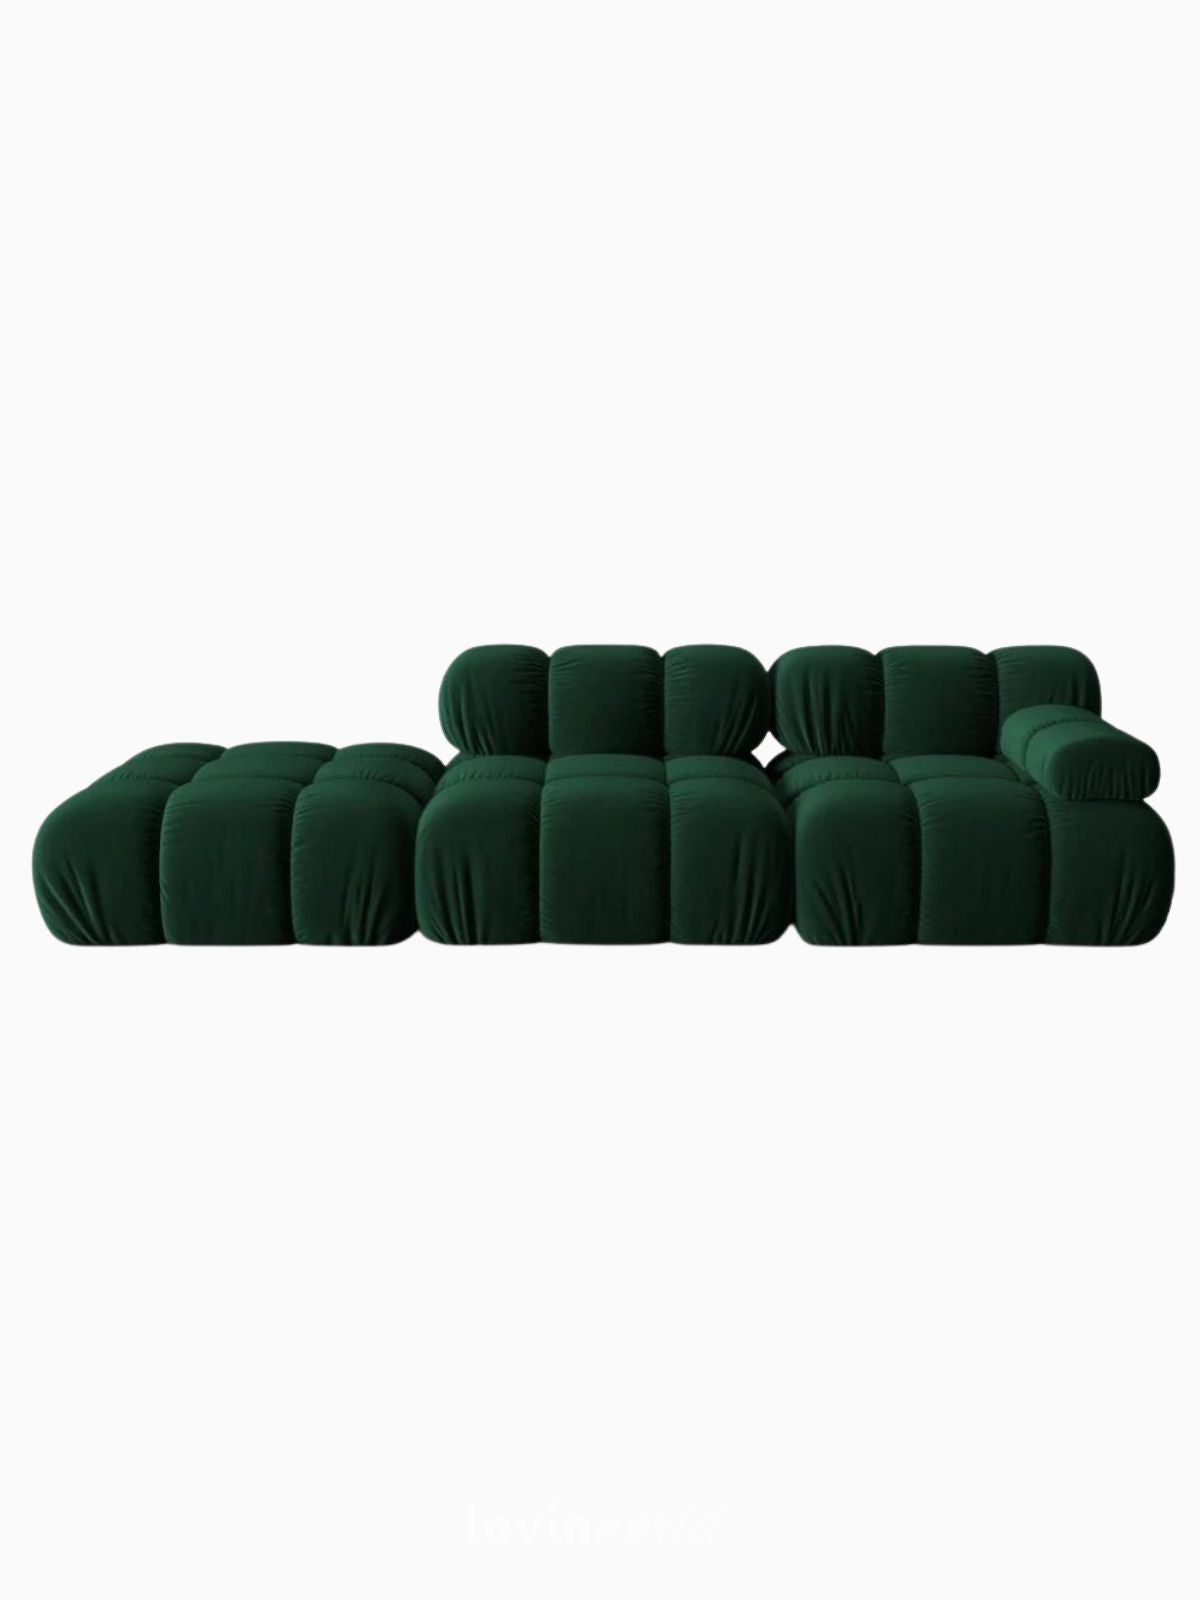 Divano modulare 4 sedute Bellis in velluto, colore verde-1